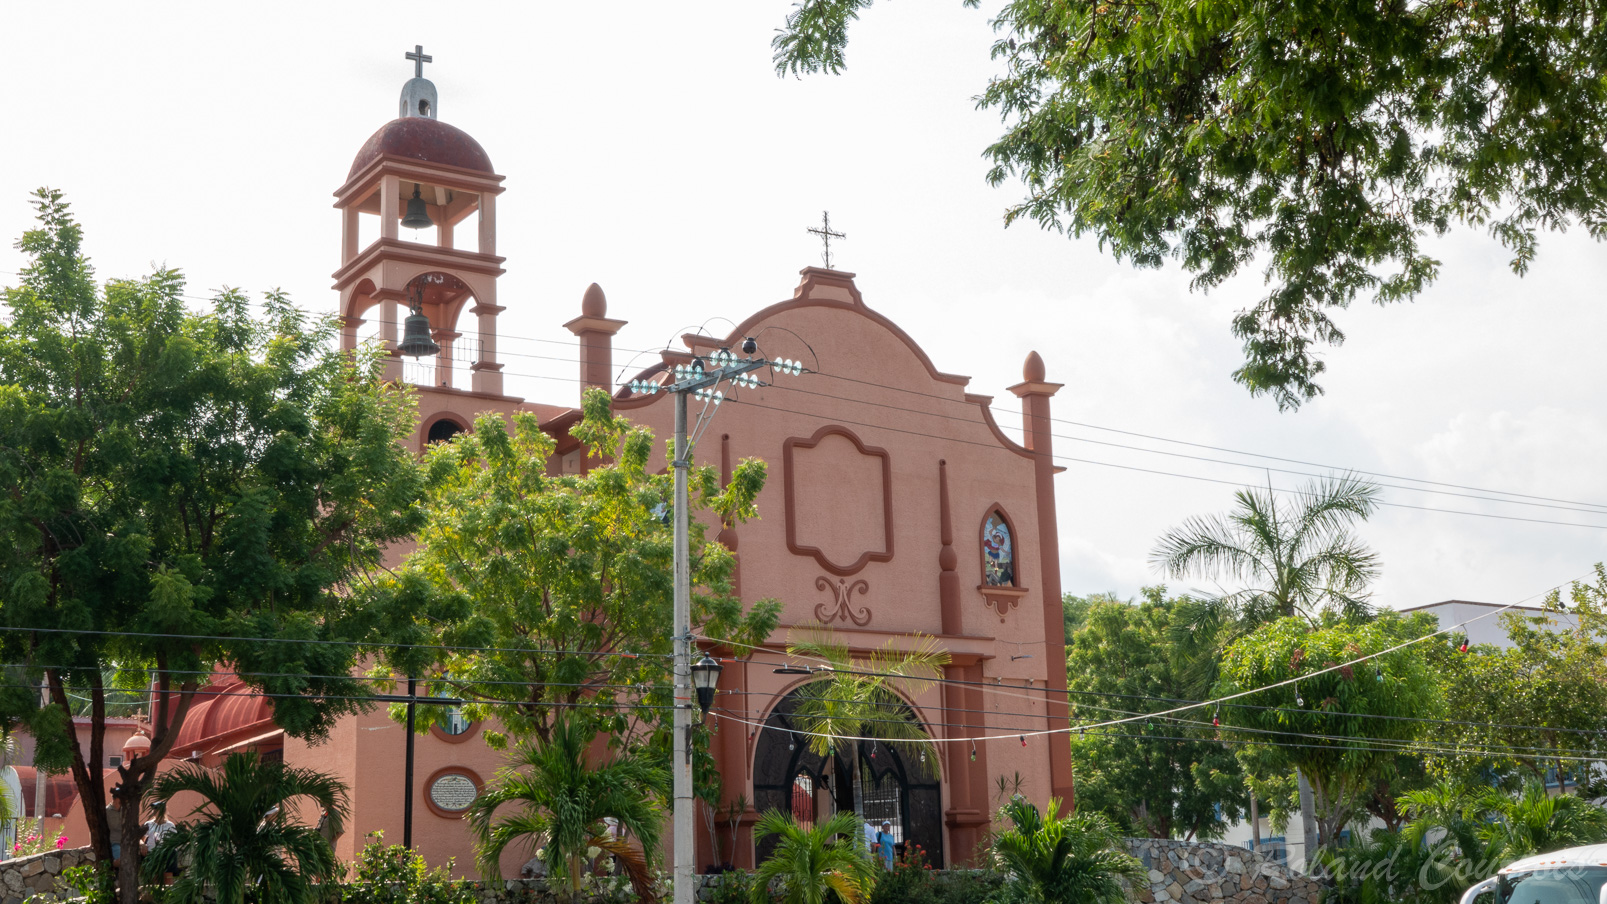 Au cente de la petite ville de Huatulco, l'église.....